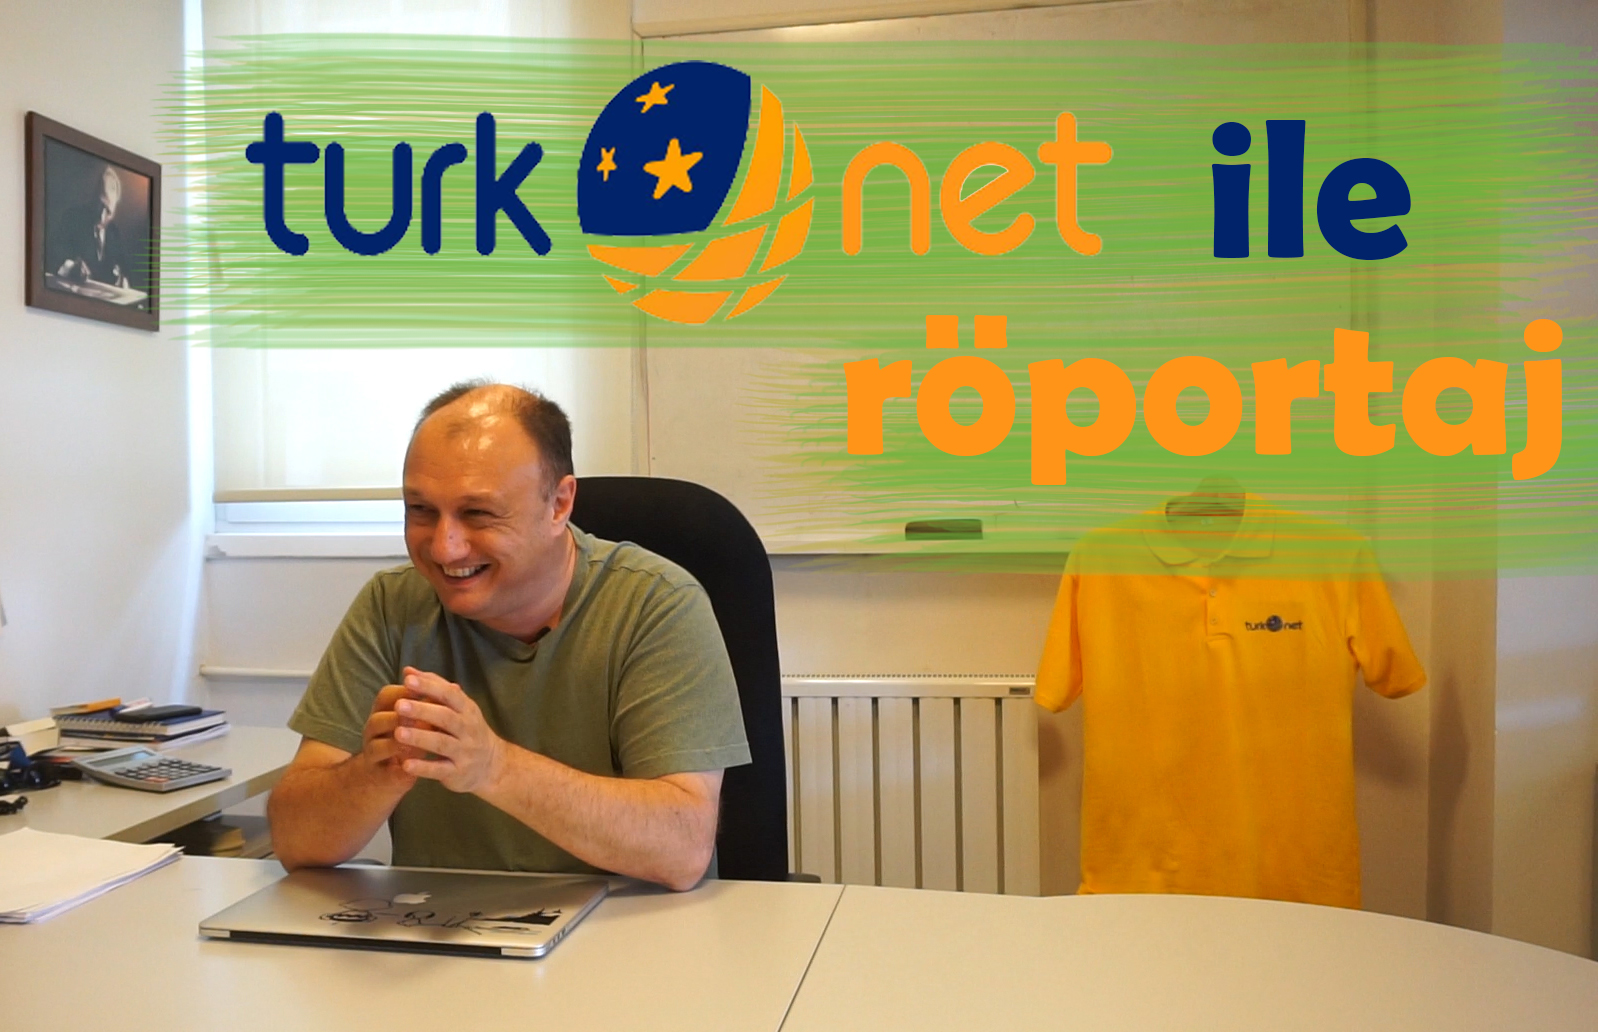 TurkNet ile görüştük, sorularımızı sorduk - 2019 yılında neler olacak?